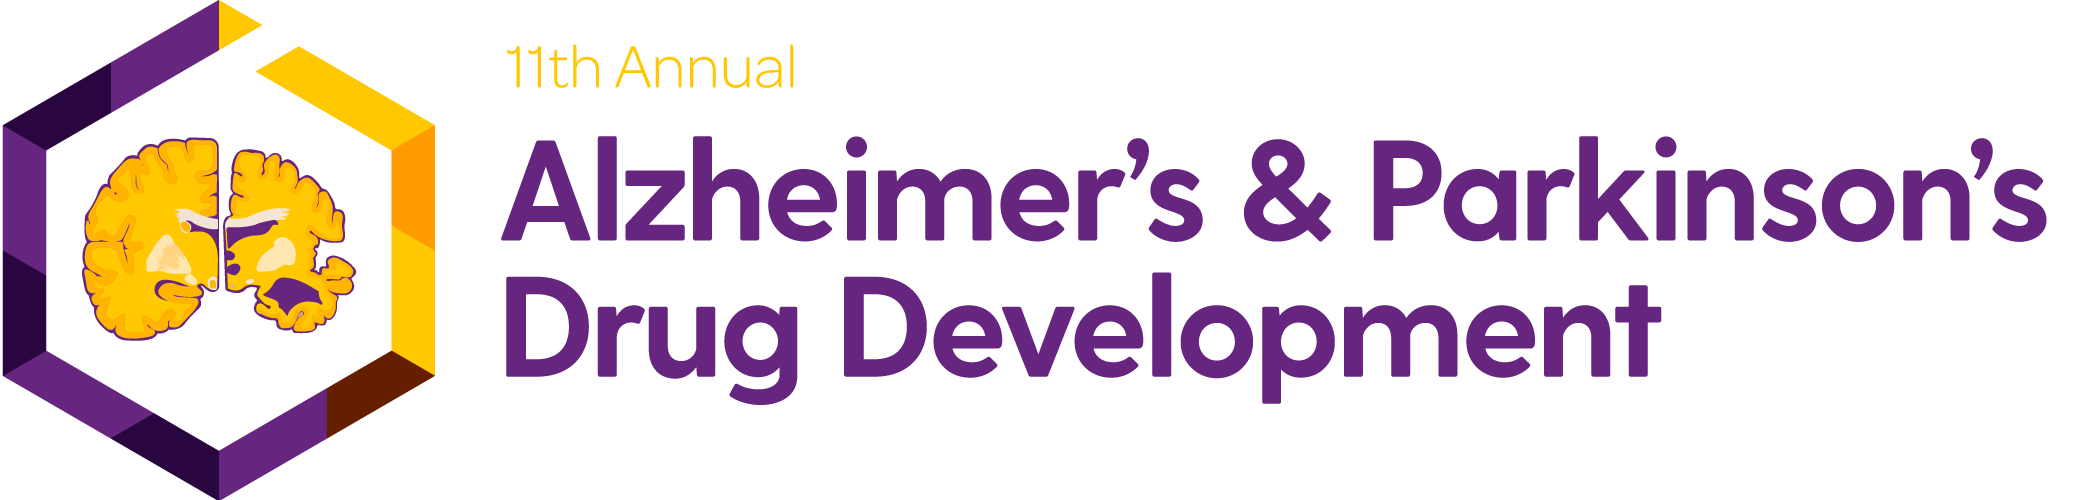 alzheimers-parkinsons-summit Logo